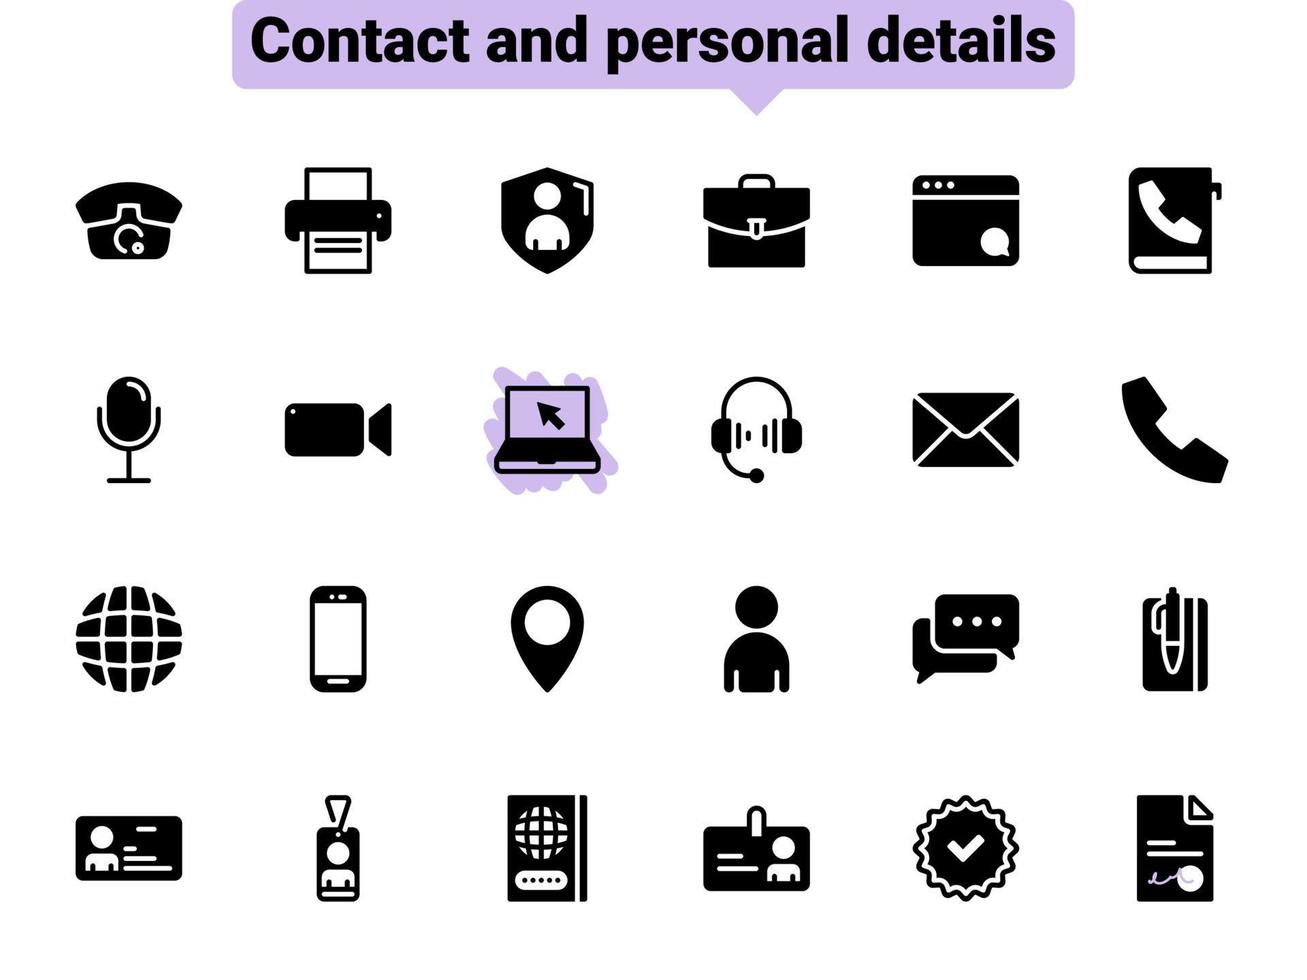 conjunto de ícones do vetor preto, isolados contra um fundo branco. ilustração plana em um contato de tema e dados pessoais. preencher, glifo